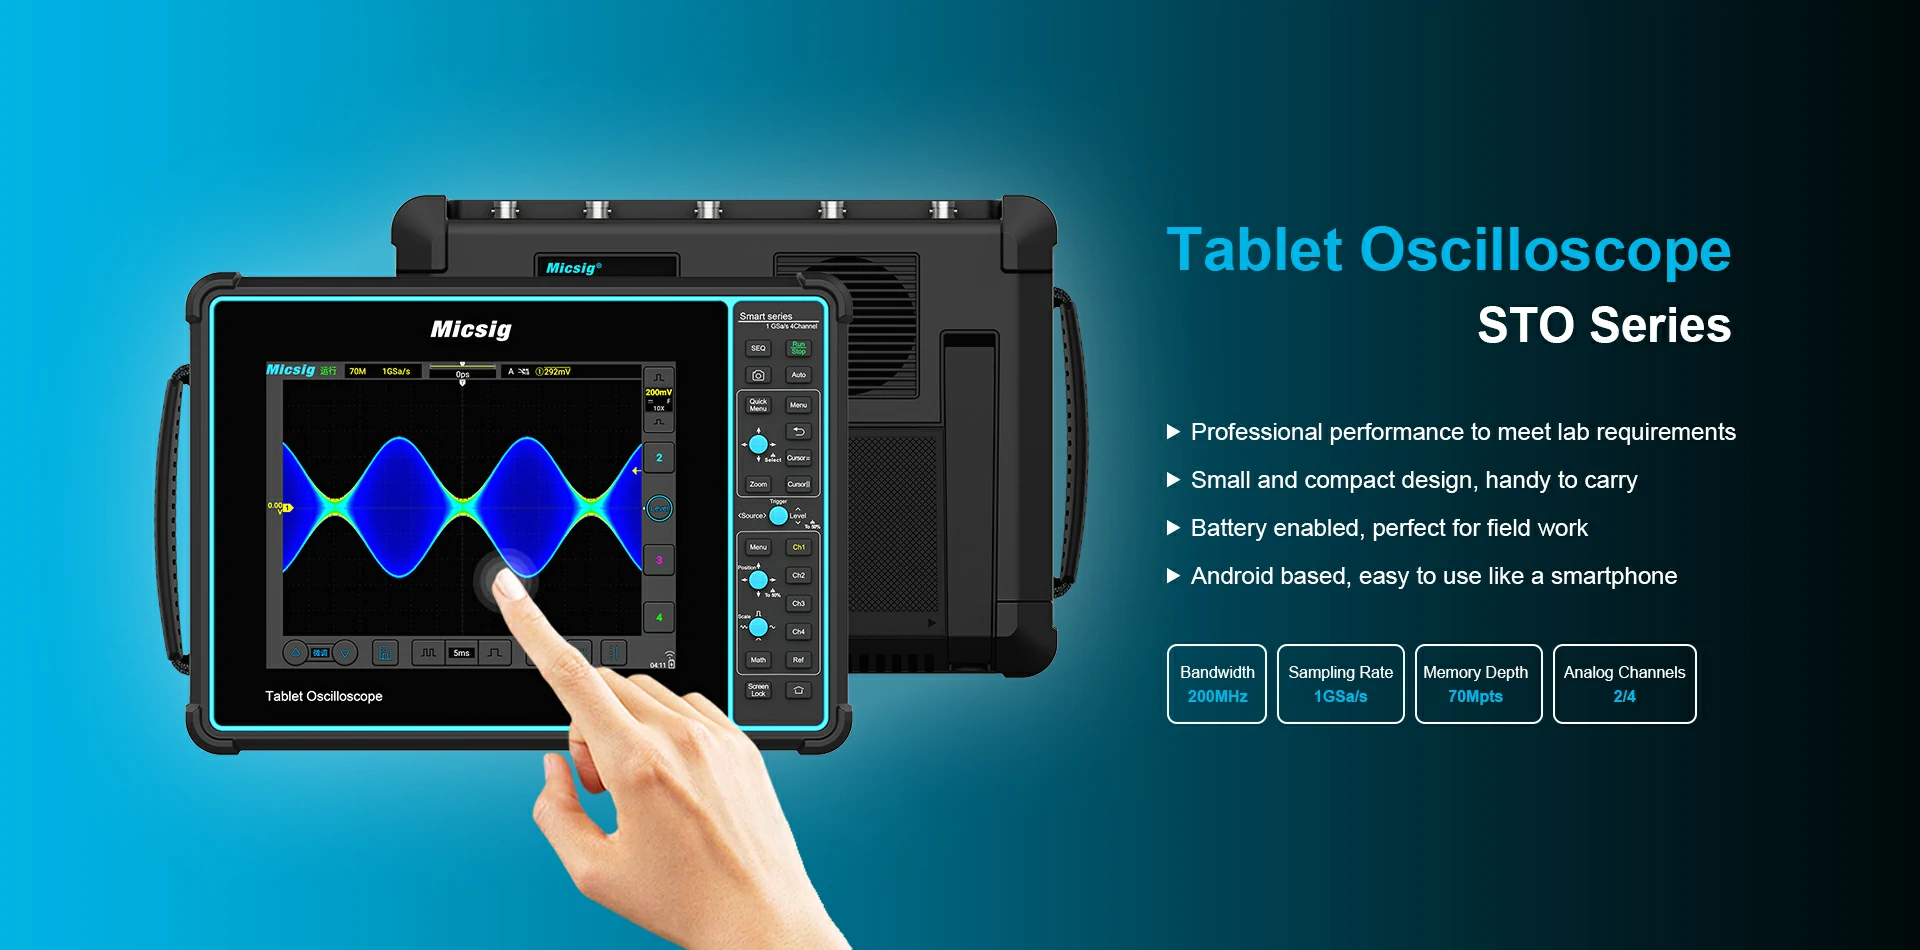 GEN 4 Tablet Oscillsocope STO Series